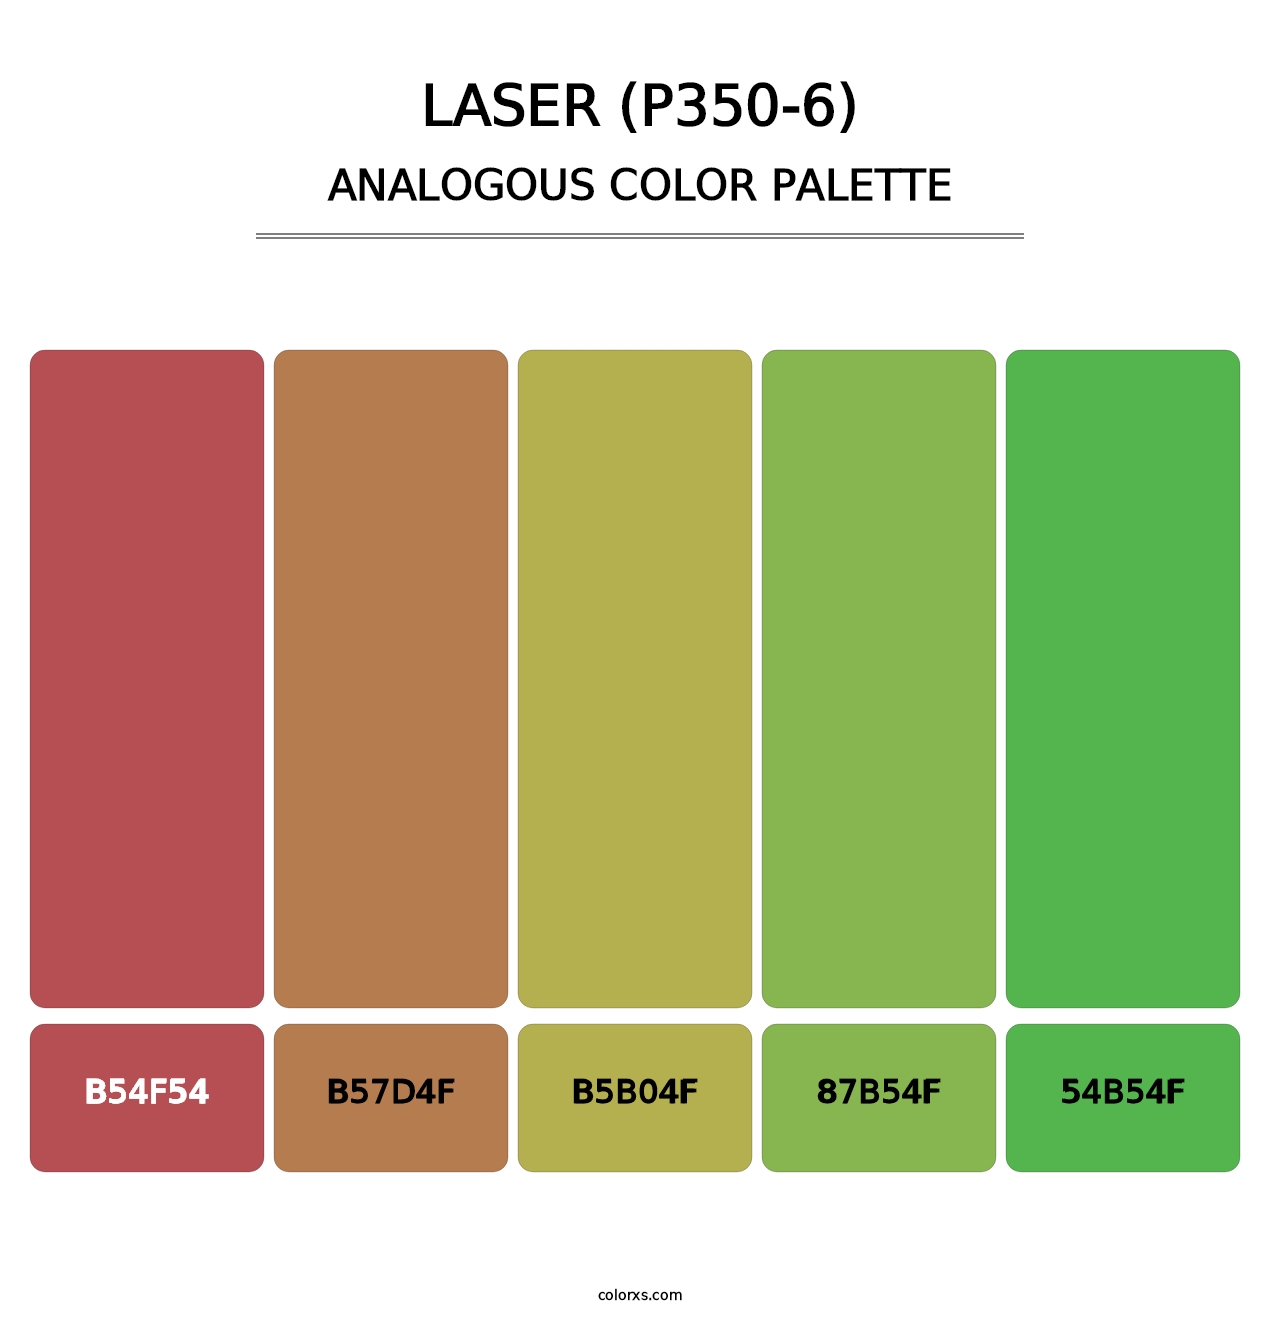 Laser (P350-6) - Analogous Color Palette